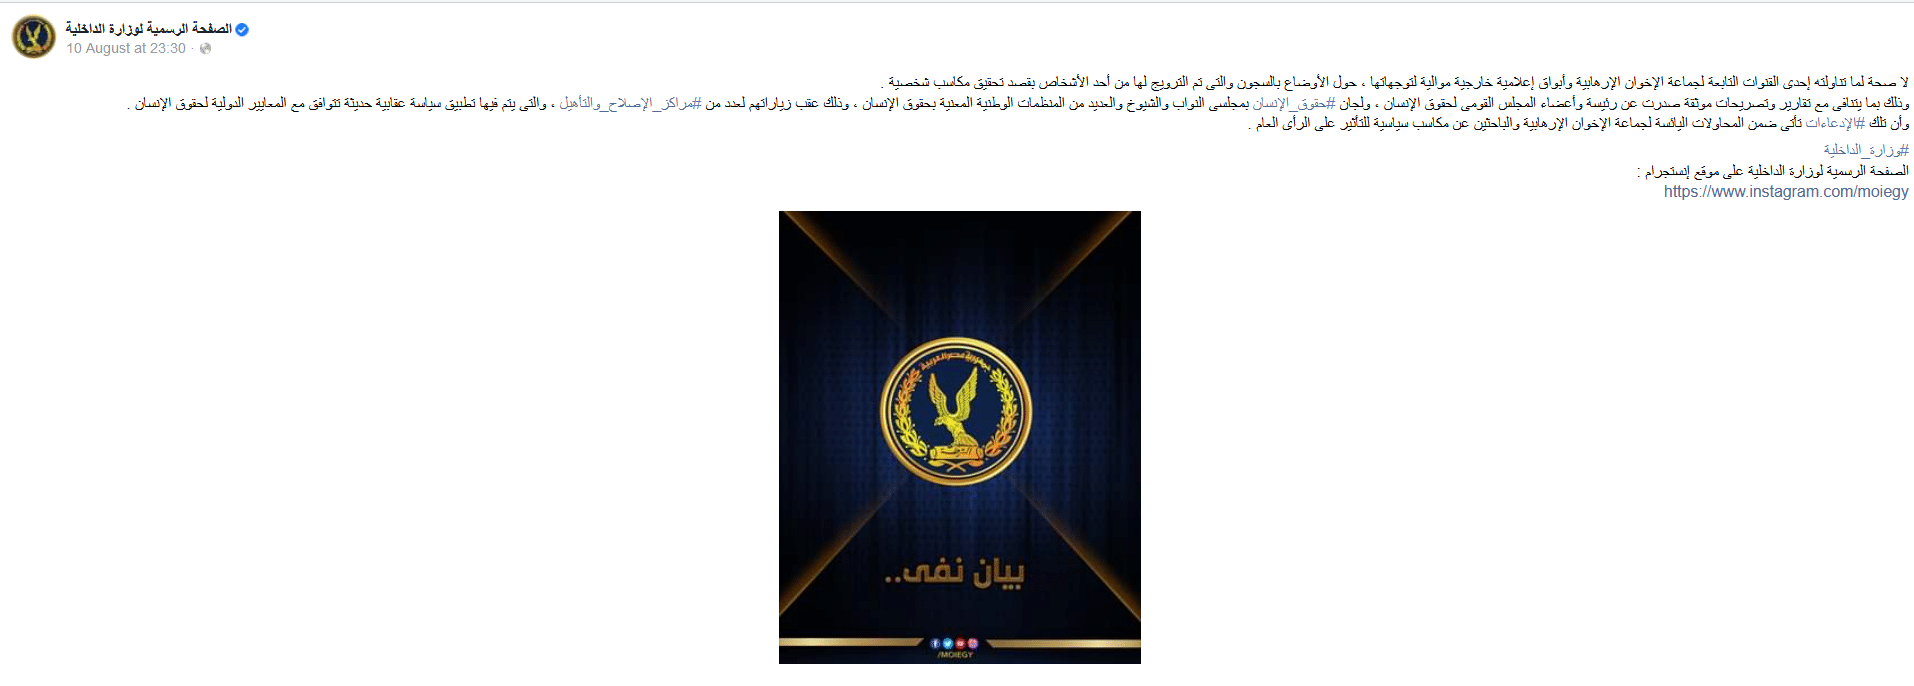  بيان وزارة الداخلية المصرية 